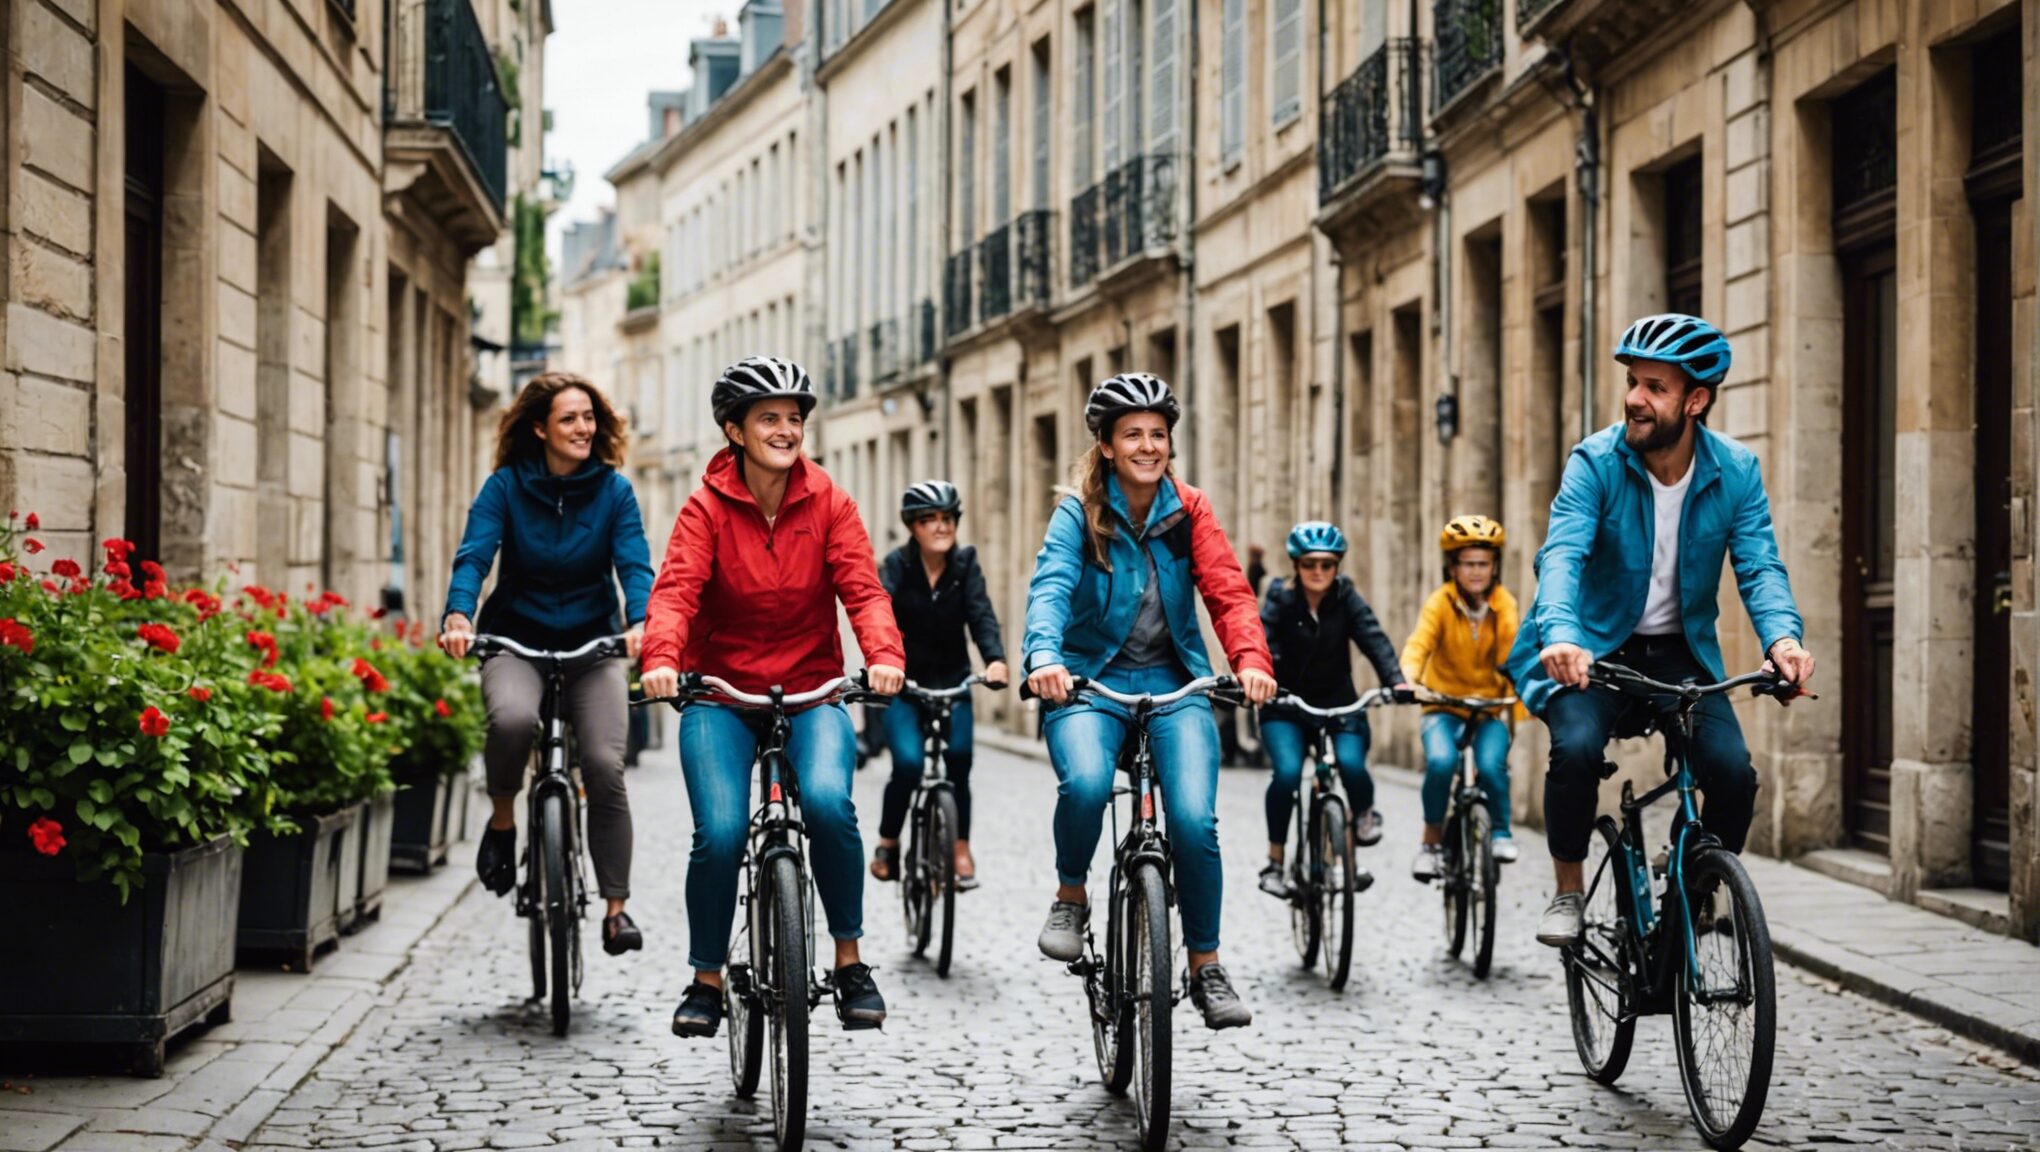 découvrez comment profiter d'un week-end anti-stress en famille à bordeaux en suivant ce guide touristique exceptionnel pour des balades à vélo inoubliables.